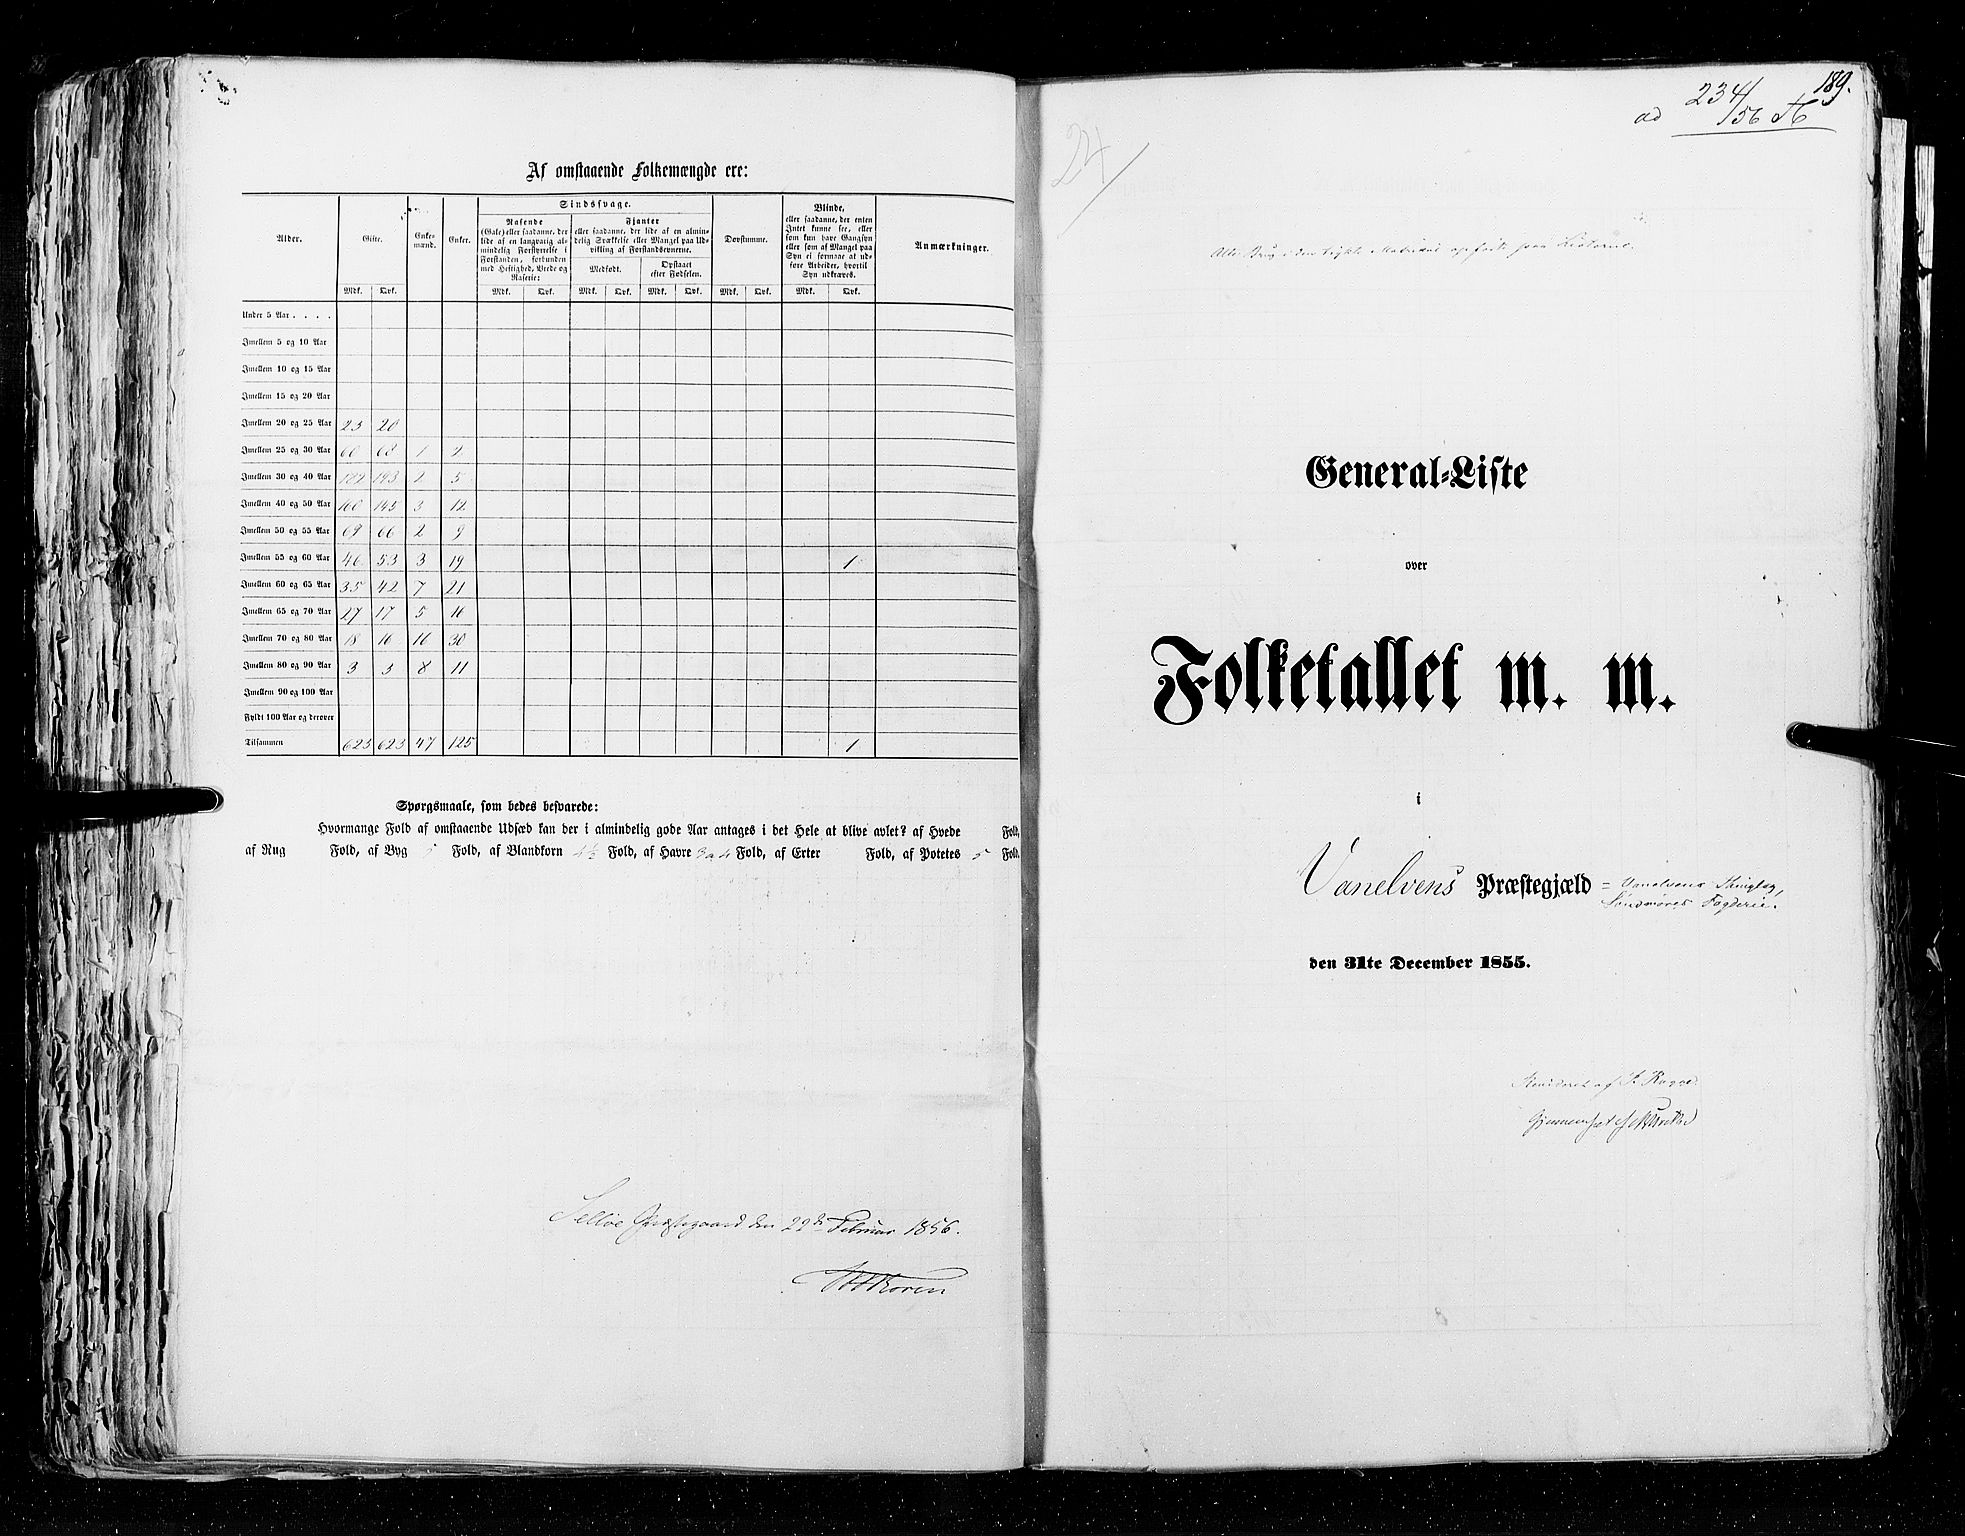 RA, Folketellingen 1855, bind 5: Nordre Bergenhus amt, Romsdal amt og Søndre Trondhjem amt, 1855, s. 189